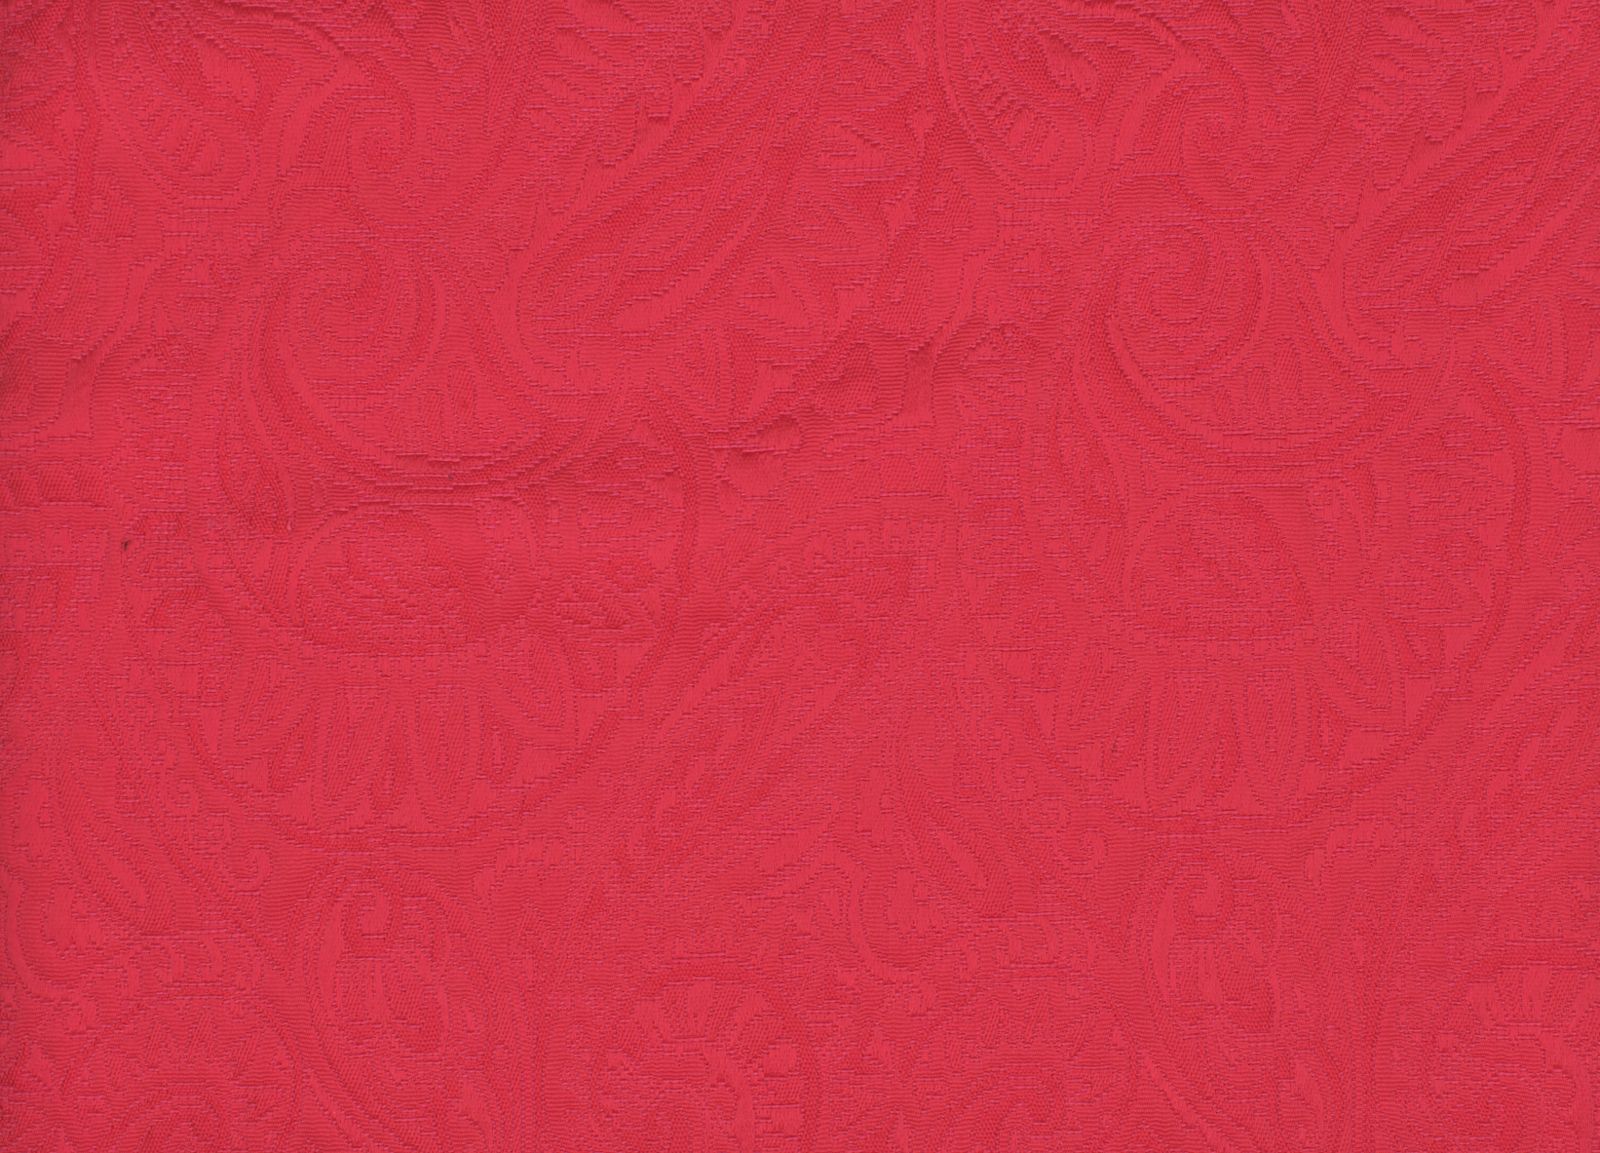 33001-02 Deep Pink Woven Jacqaurd Plain Dyed Blend 296g/yd 54&quot; blend cotton jacqaurd pink plain dyed polyester woven Solid Color, Jacquard - knit fabric - woven fabric - fabric company - fabric wholesale - fabric b2b - fabric factory - high quality fabric - hong kong fabric - fabric hk - acetate fabric - cotton fabric - linen fabric - metallic fabric - nylon fabric - polyester fabric - spandex fabric - chun wing hing - cwh hk - fabric worldwide ship - 針織布 - 梳織布 - 布料公司- 布料批發 - 香港布料 - 秦榮興